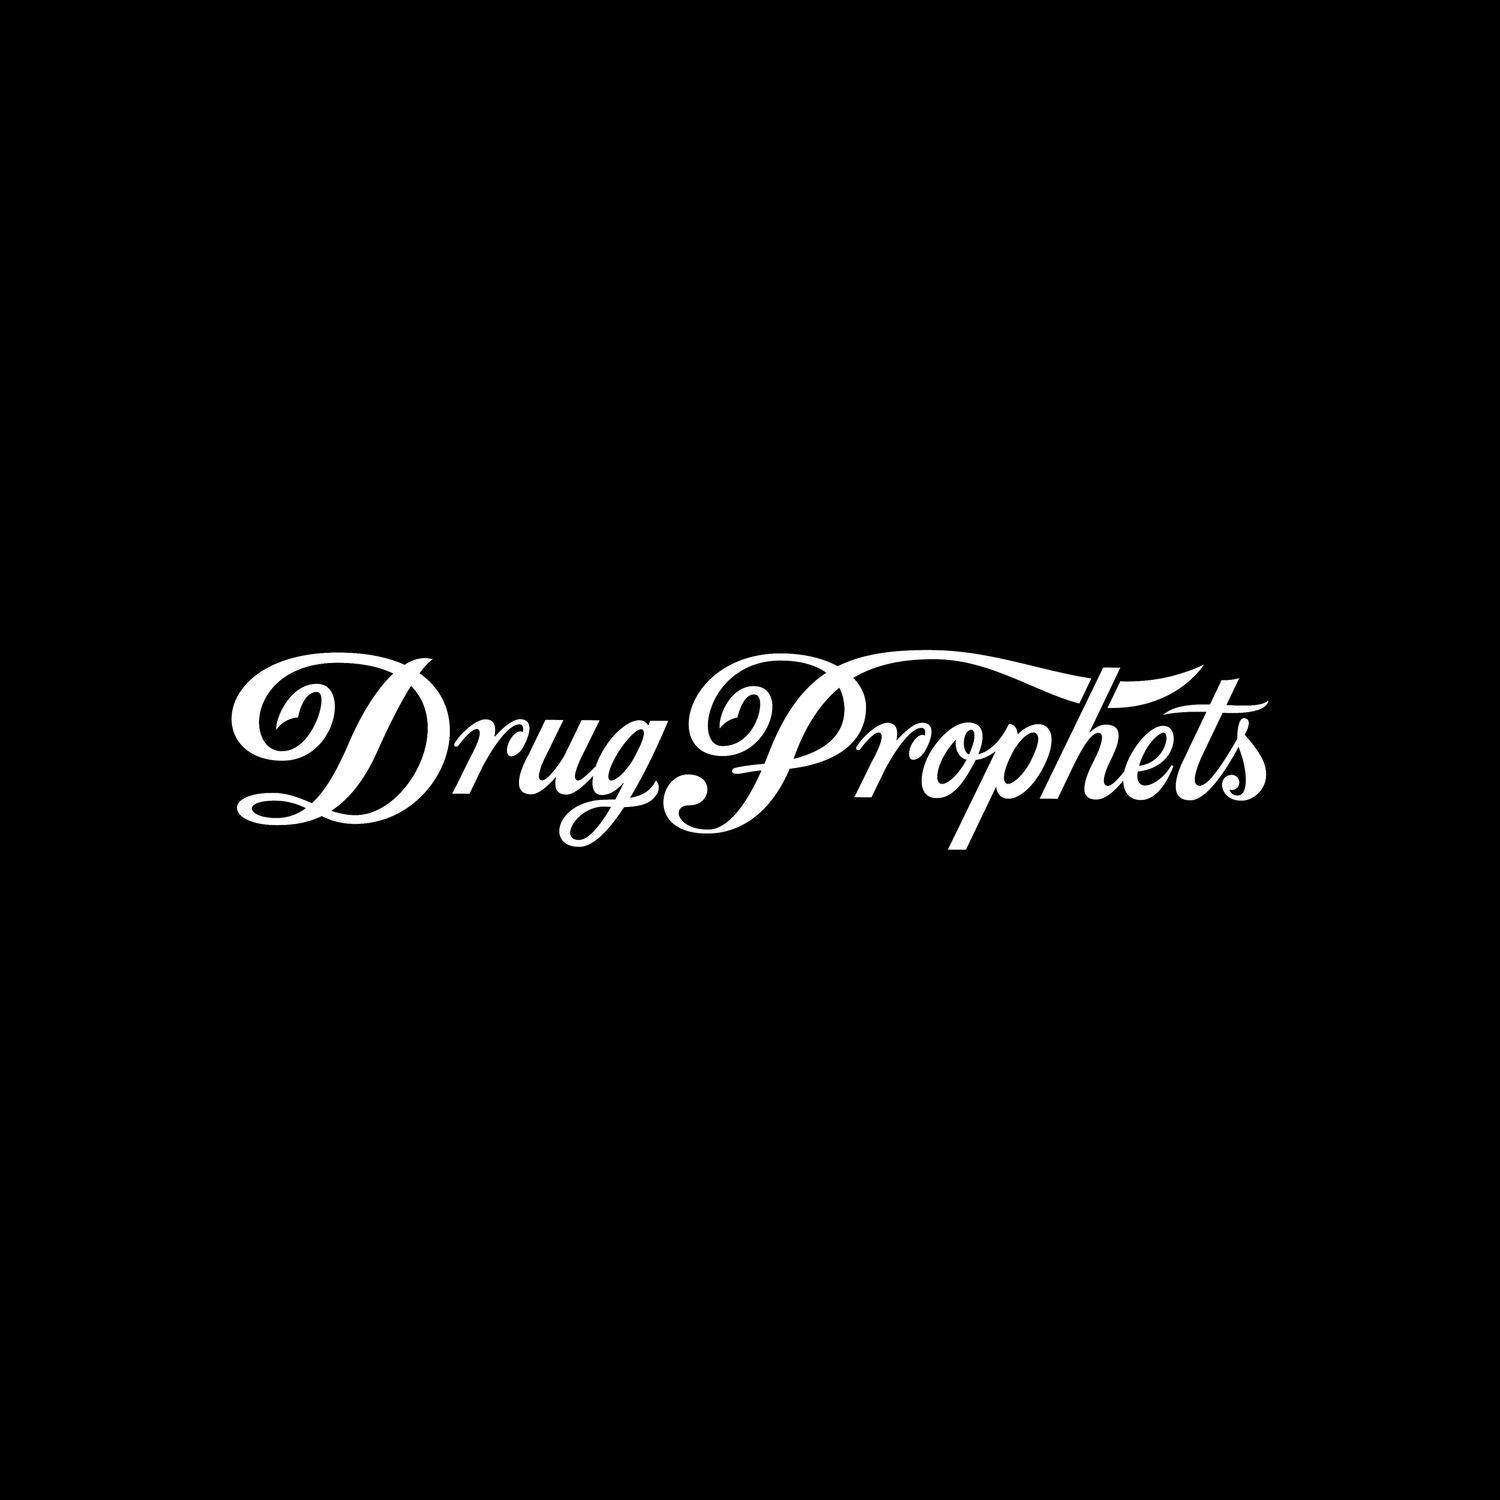 Drug Prophets